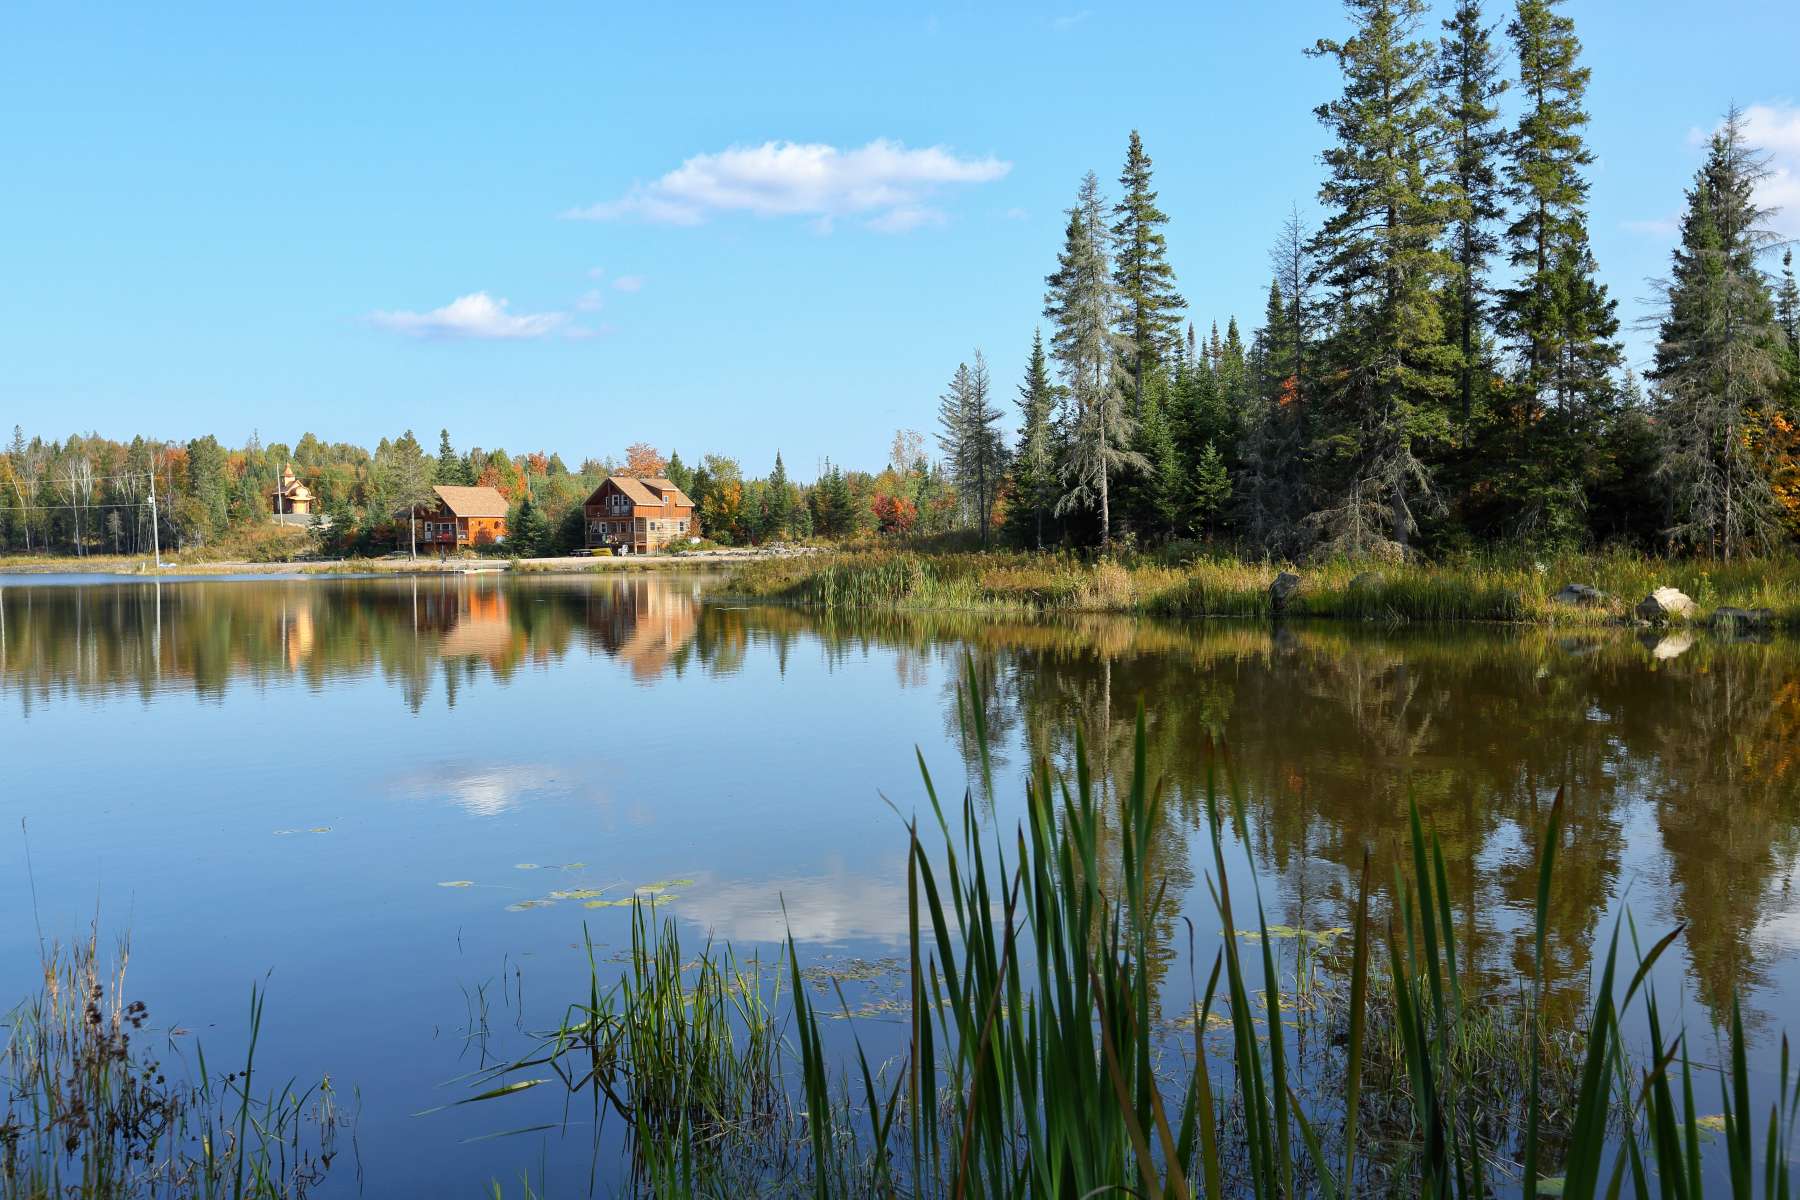 Swan Lake Off Grid Camp & RV Park - Hipcamp in Burk's Falls, Ontario